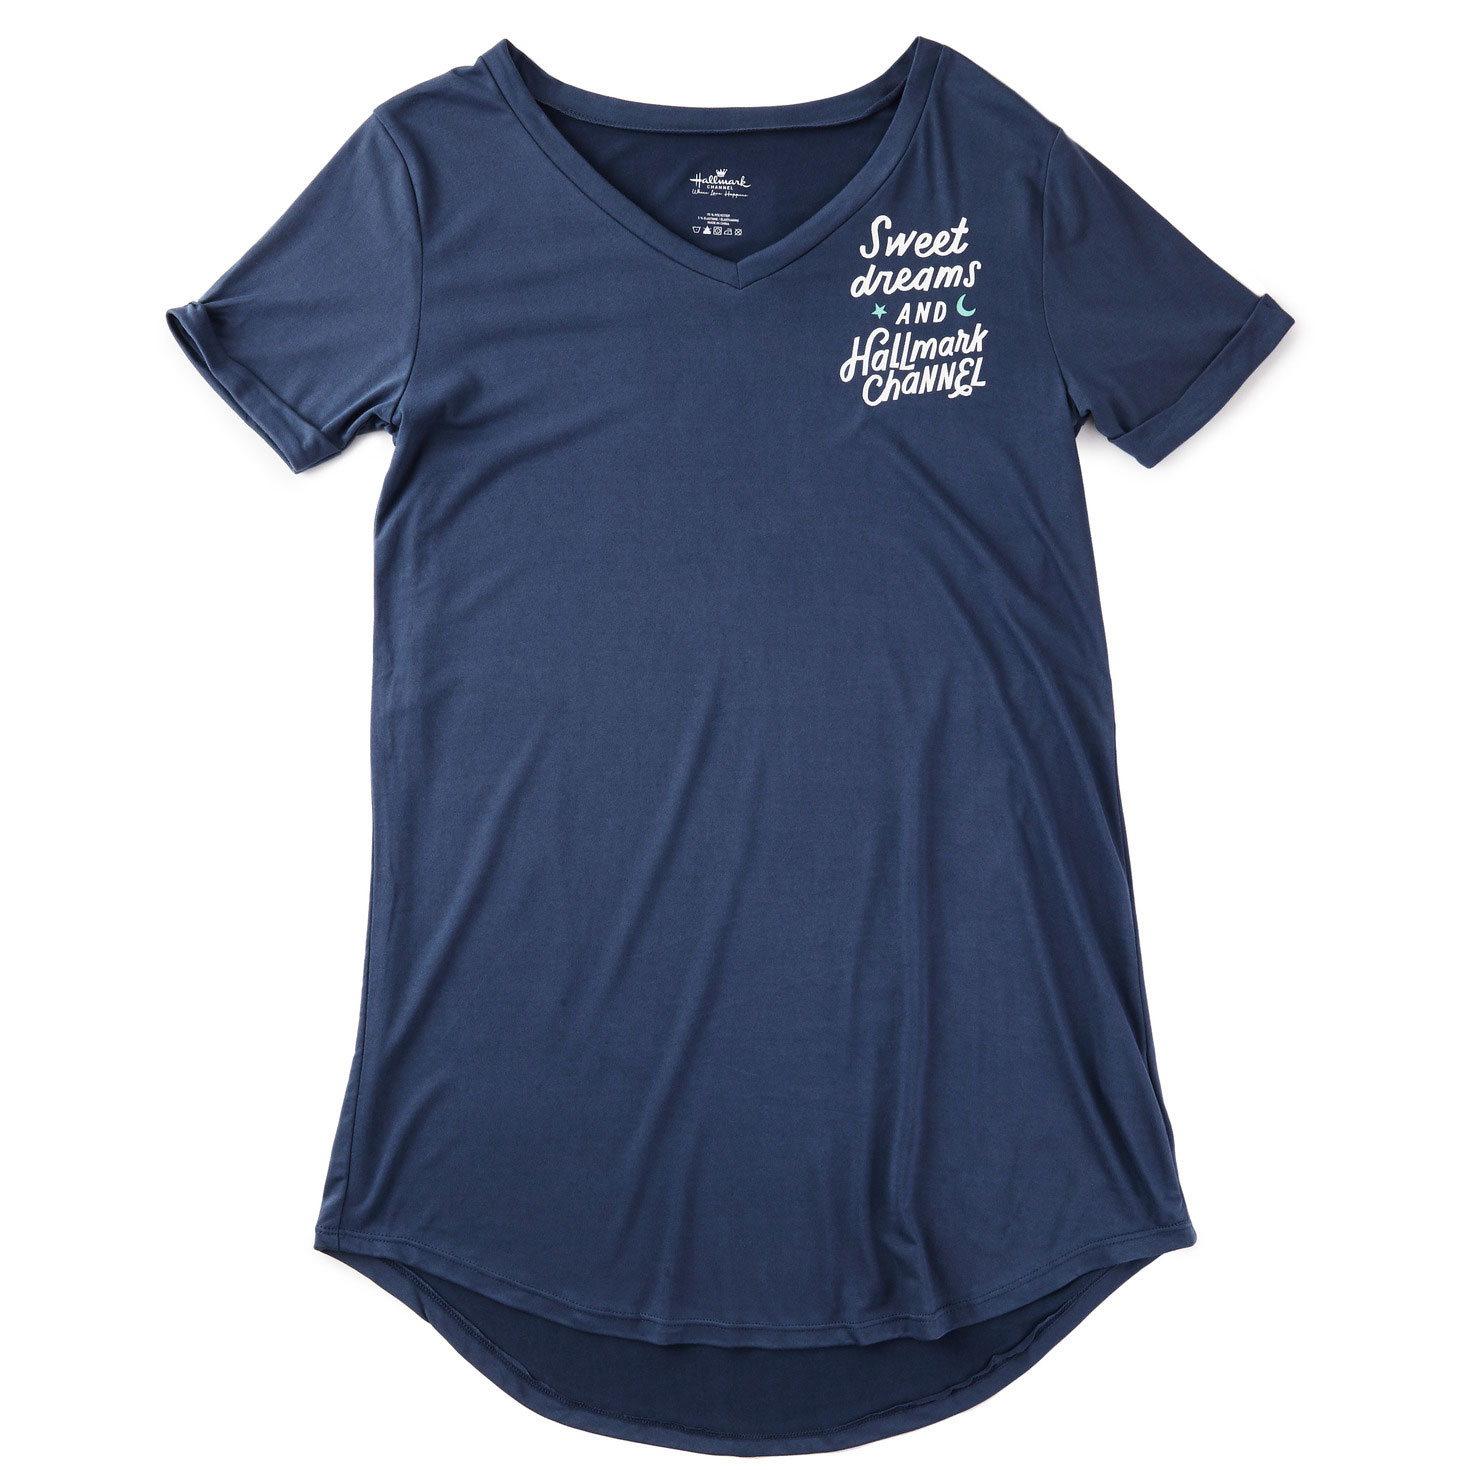 Hallmark Channel Sweet Dreams Women's Sleep Shirt, S/M - Loungewear